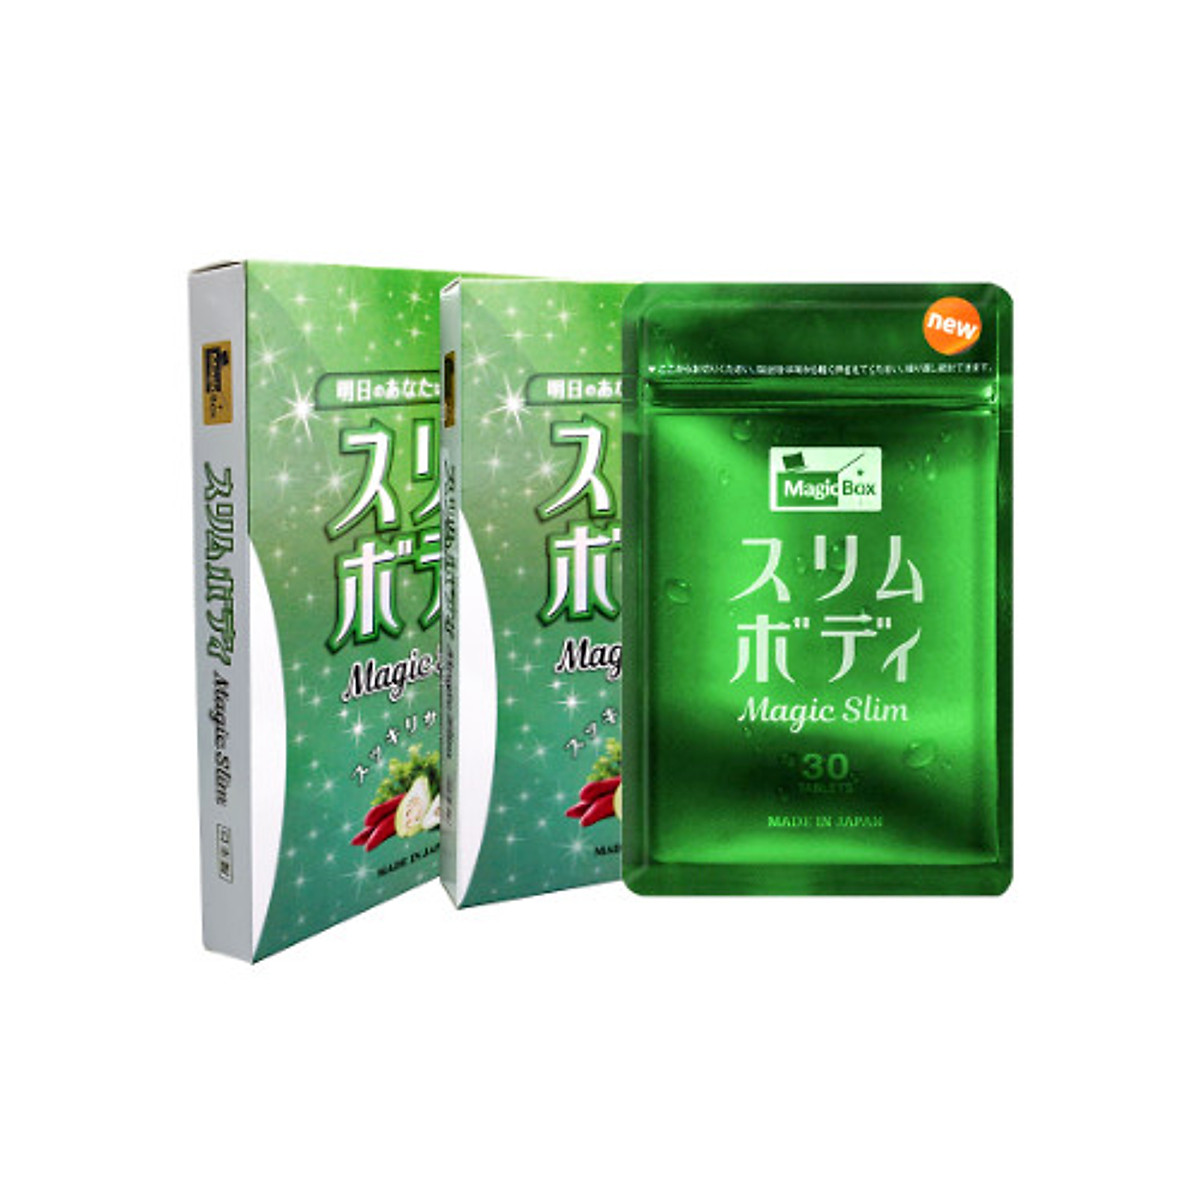 Viên uống hỗ trợ giảm cân Magic Slim Nhật Bản ( Hộp 30 viên )